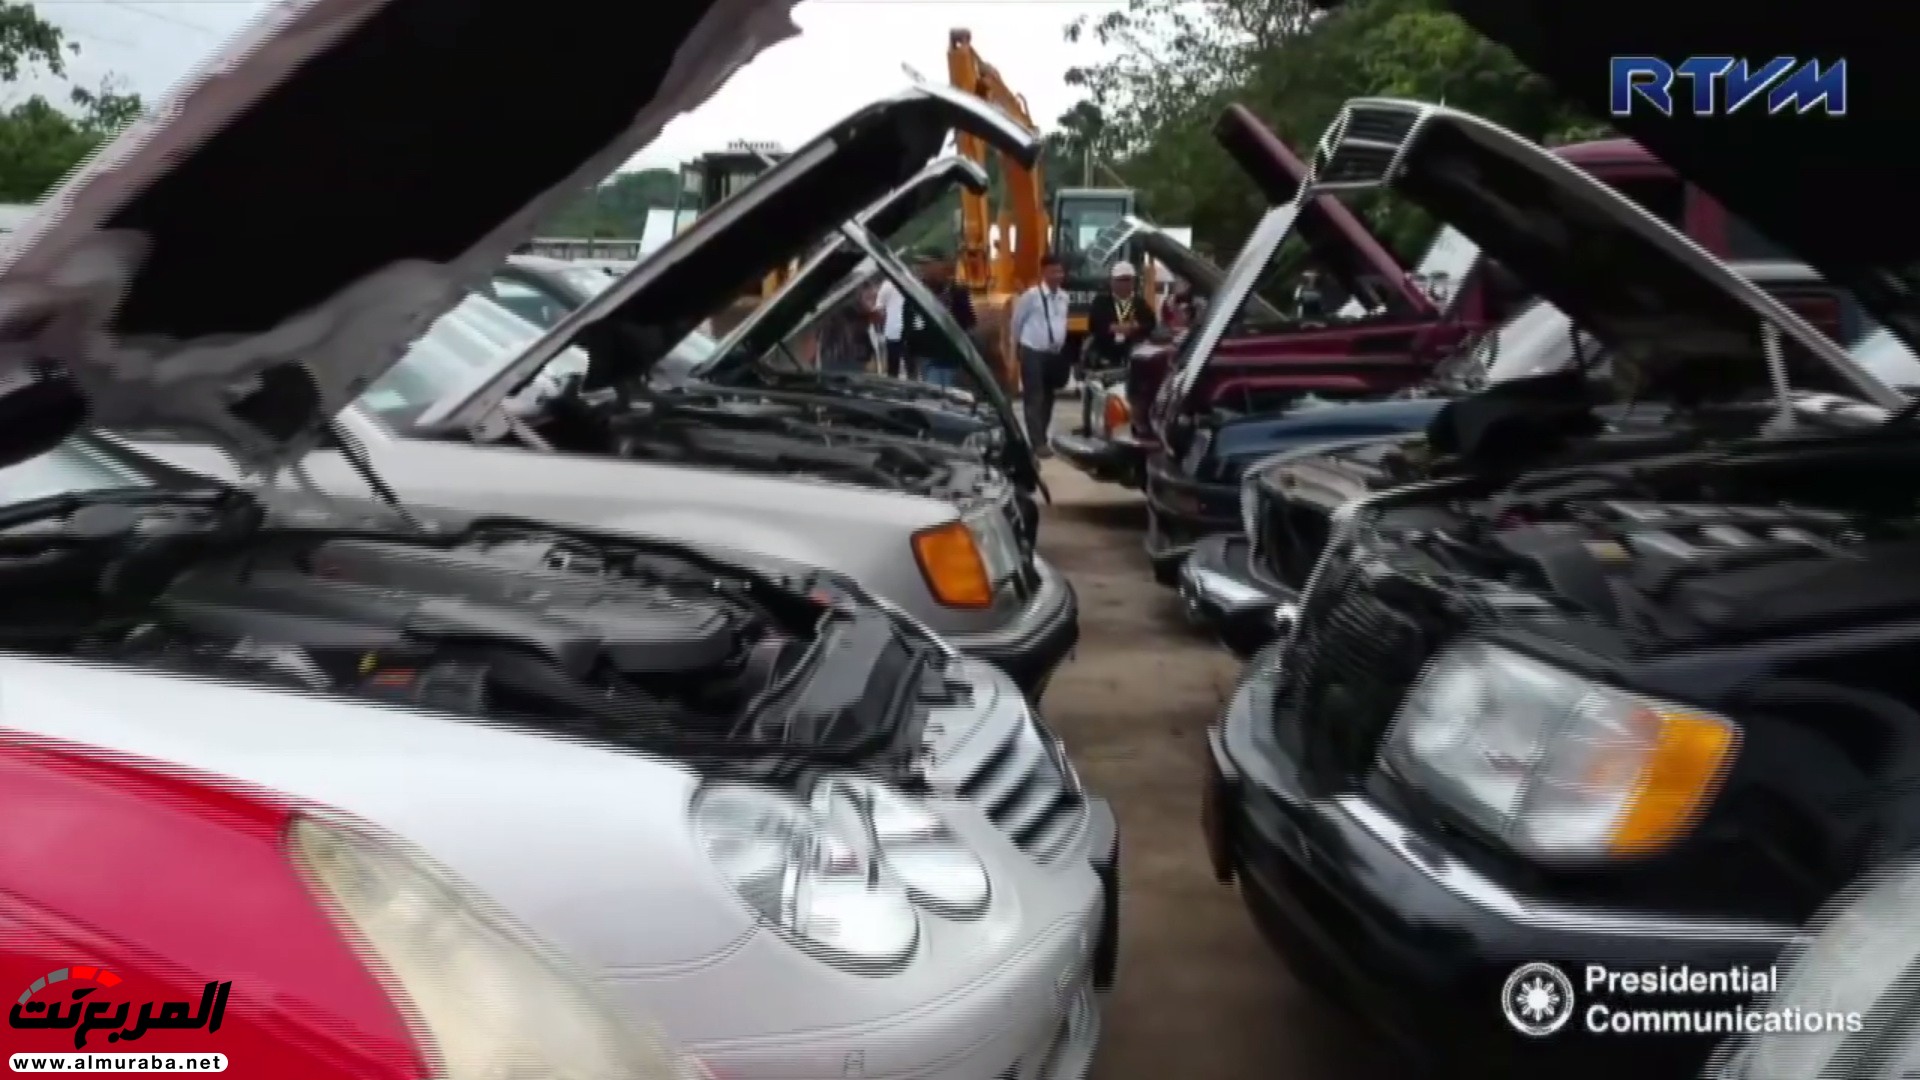 الحكومة الفلبينية تدمر 14 سيارة نادرة بقيمة 2 مليار ريال 30